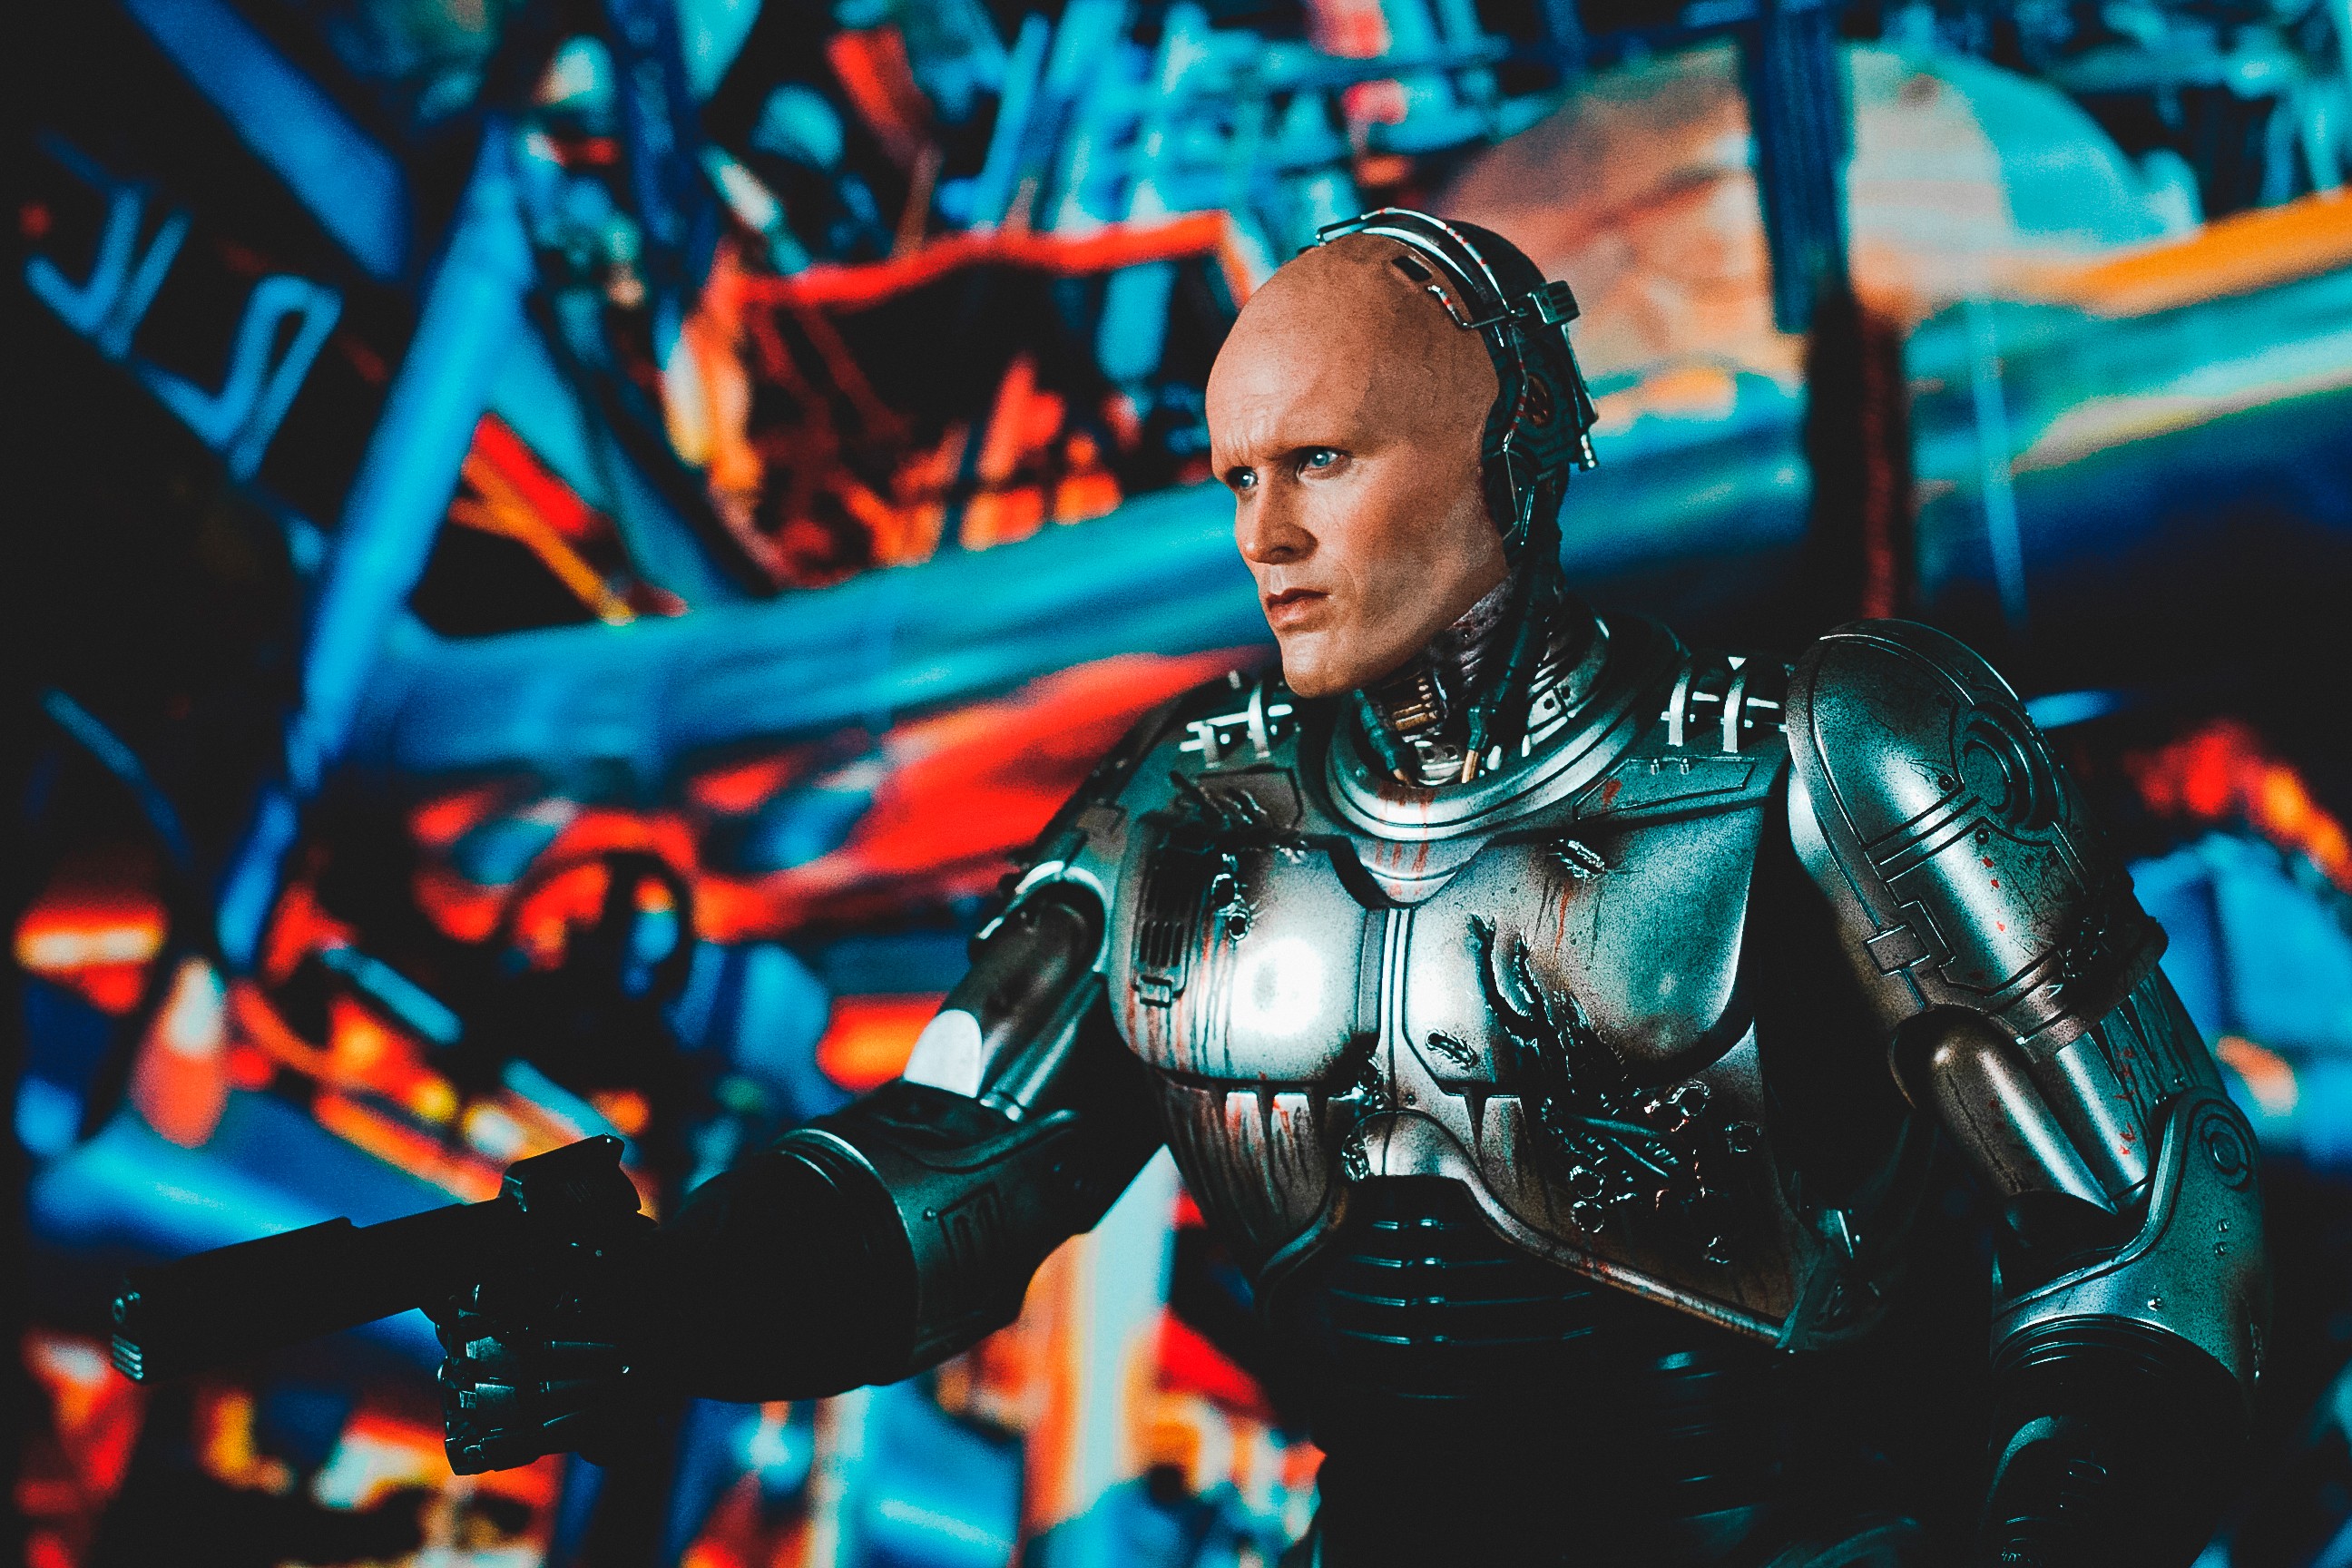 General 2592x1728 RoboCop Peter Weller cyborg movies